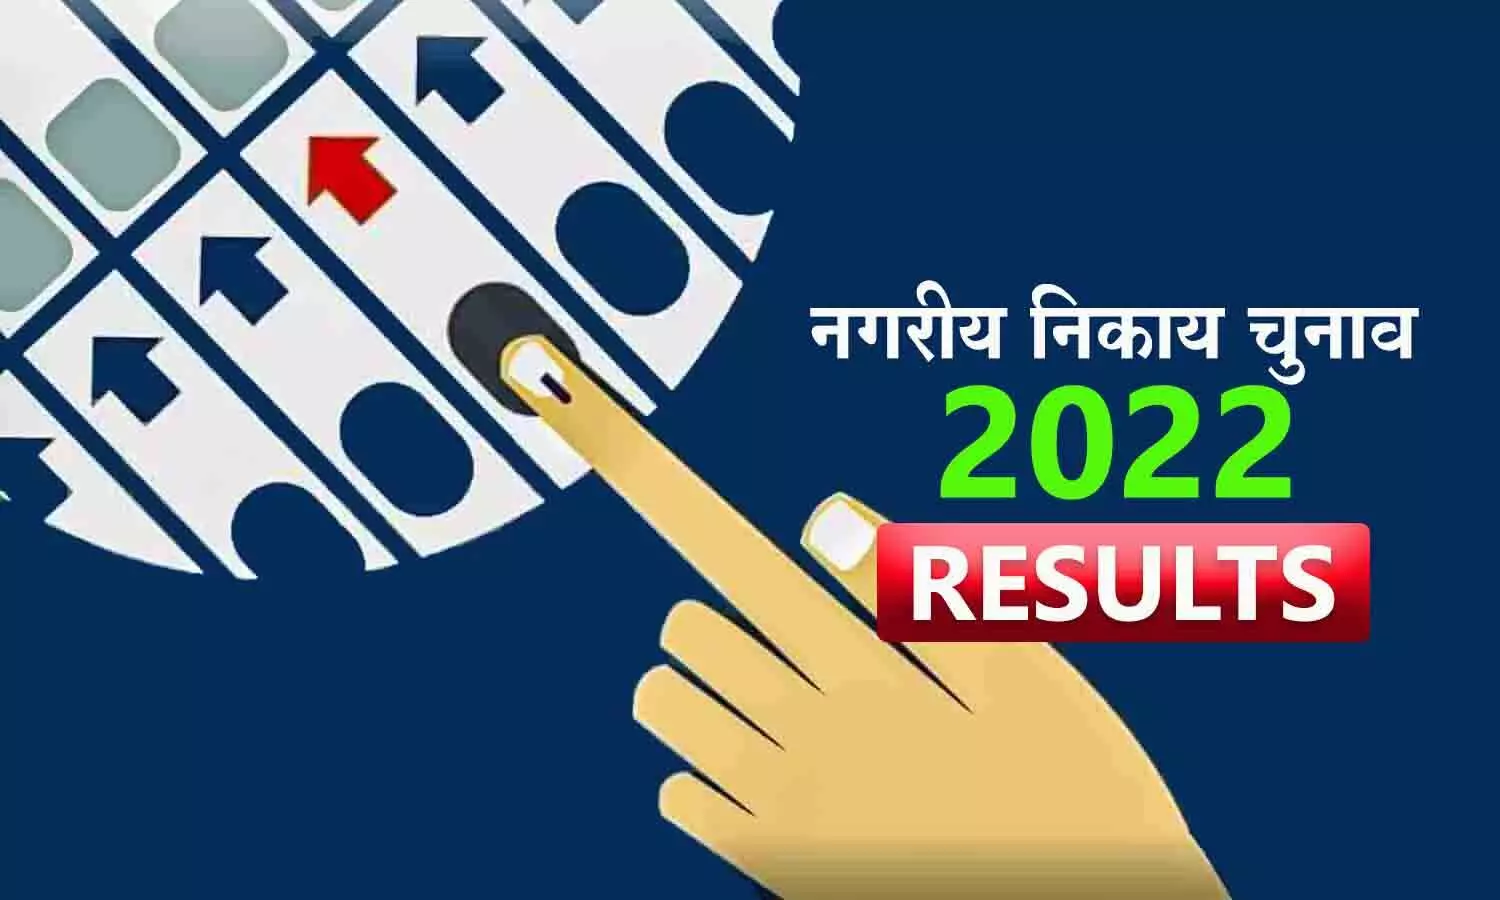 Rewa Urban Body Elections 1st Phase Result: हनुमना नगर परिषद में कांग्रेस का कब्जा, मऊगंज भाजपा के खाते में, नईगढ़ी में बहुमत की ओर BJP